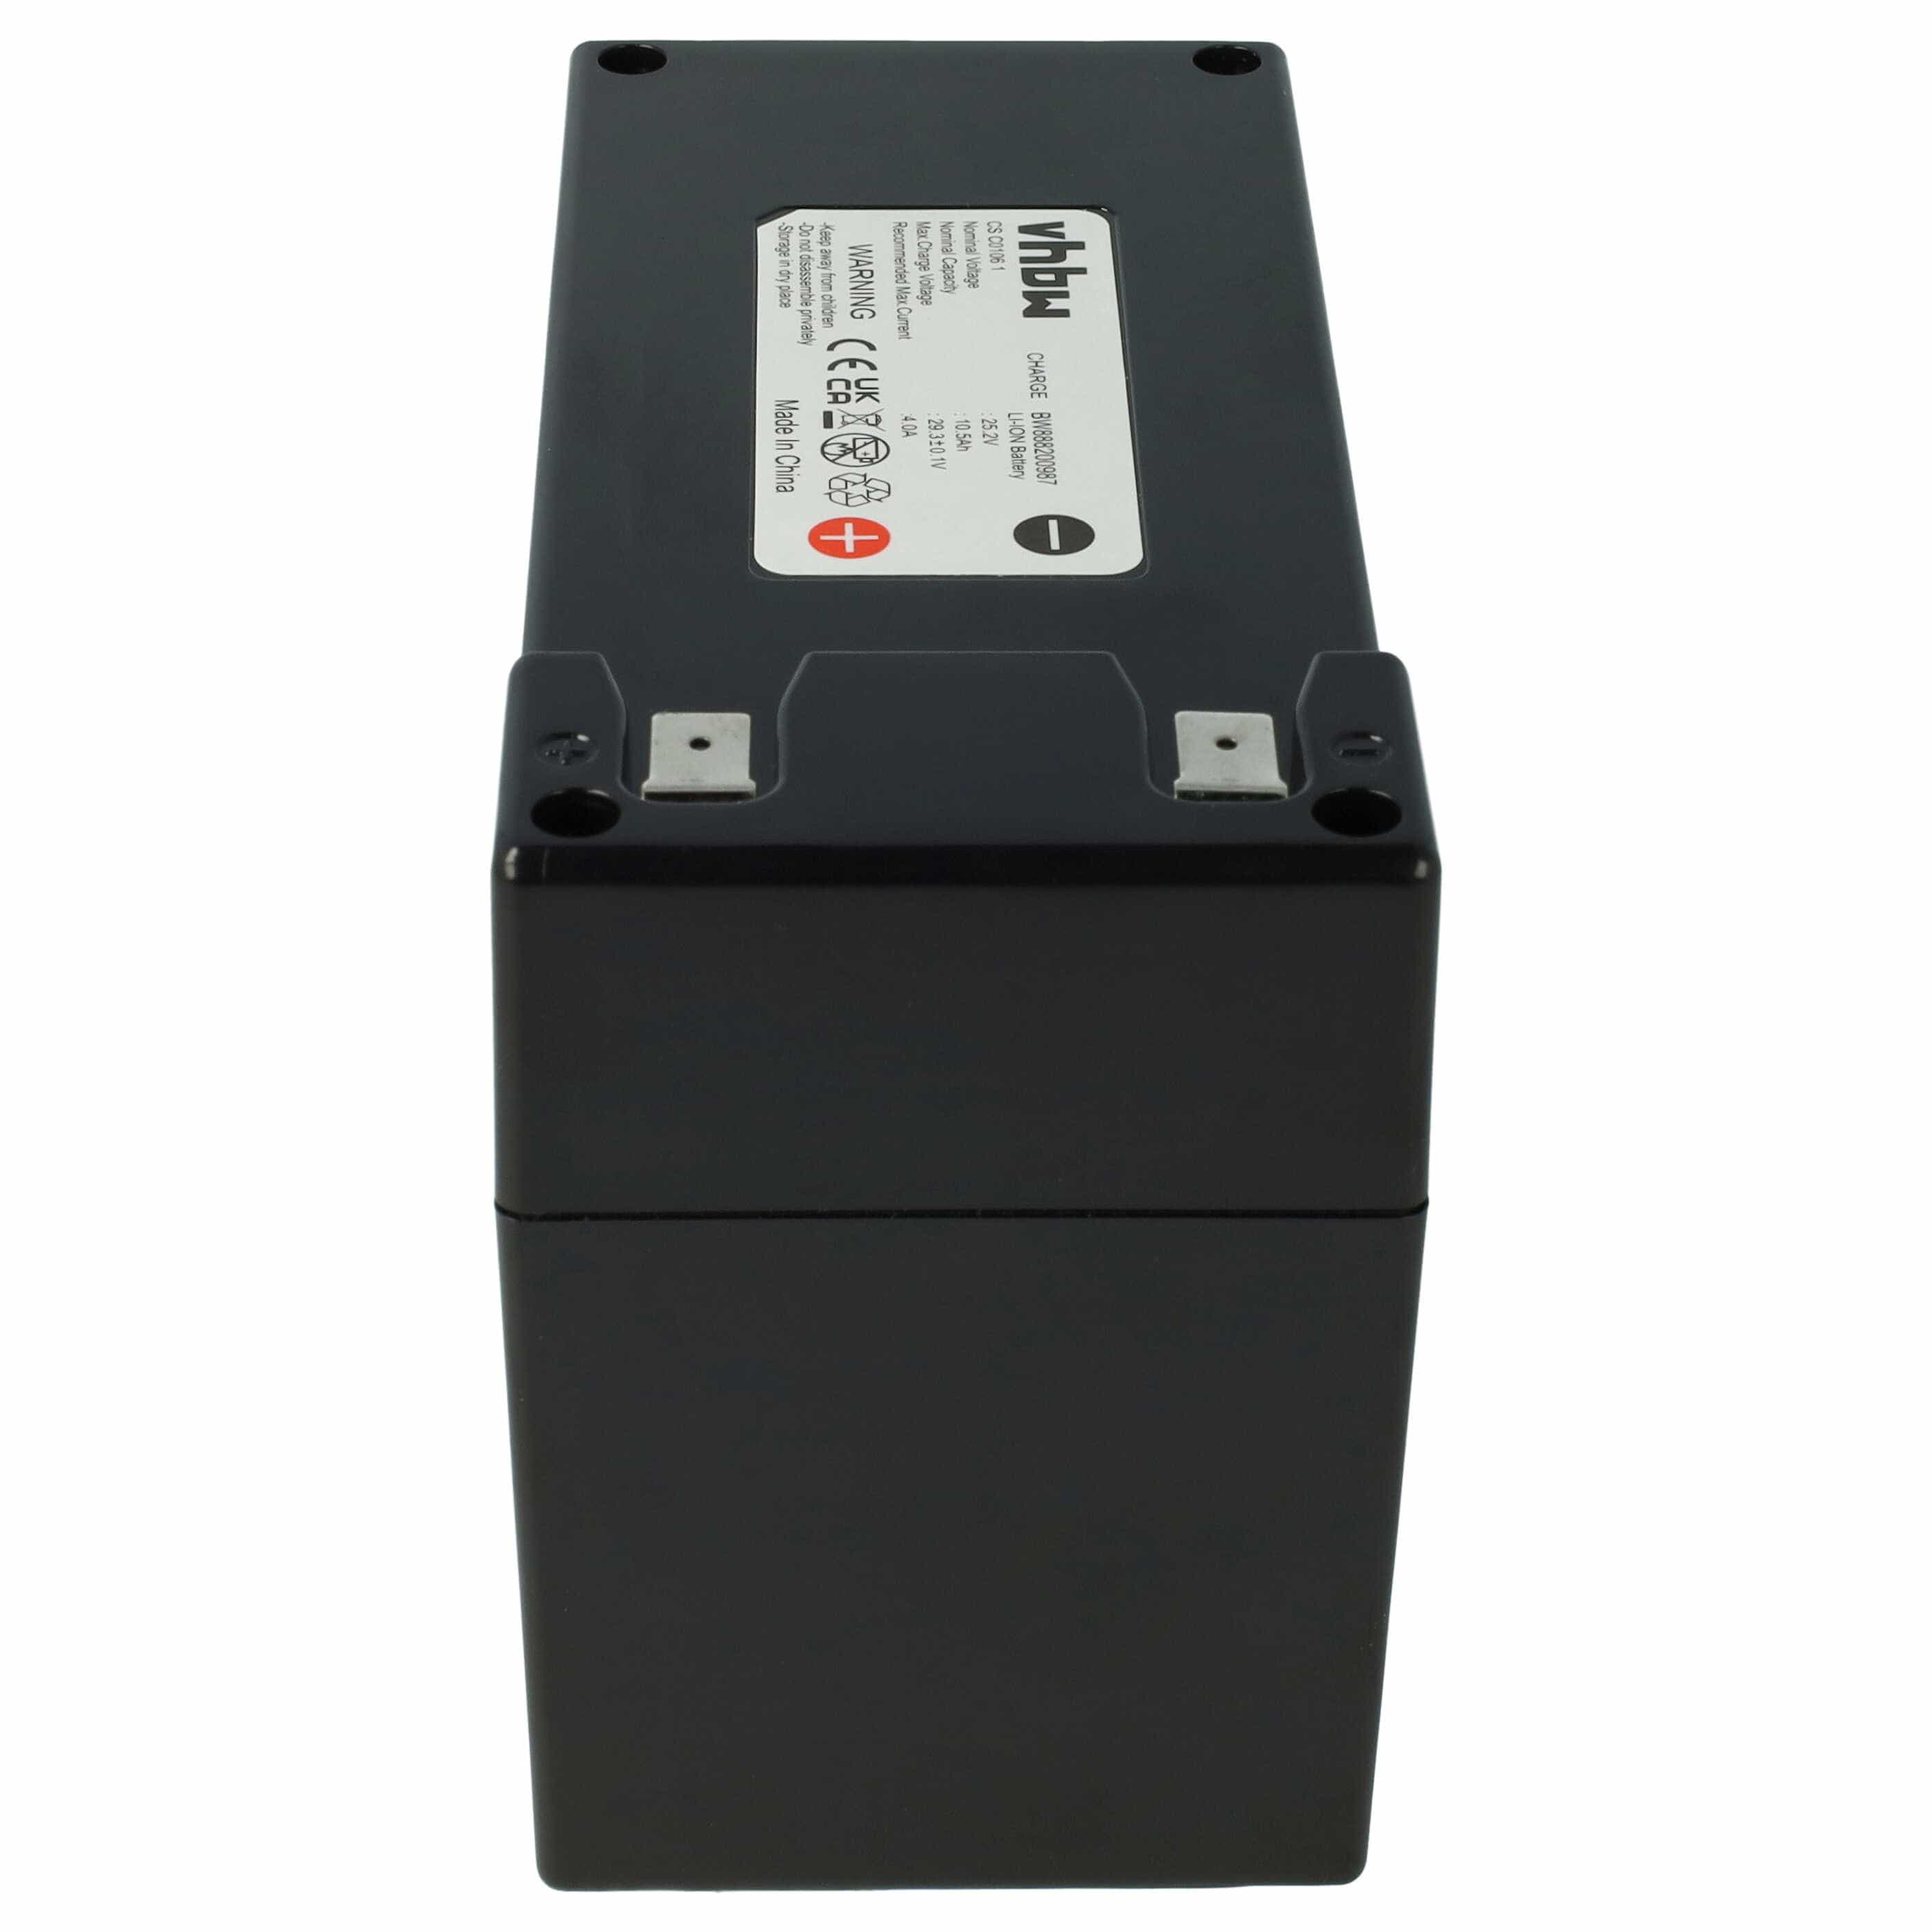 Batteria sostituisce Stiga 1126-9105-01 per dispositivo da giardinaggio Alpina - 10200mAh 25,2V Li-Ion